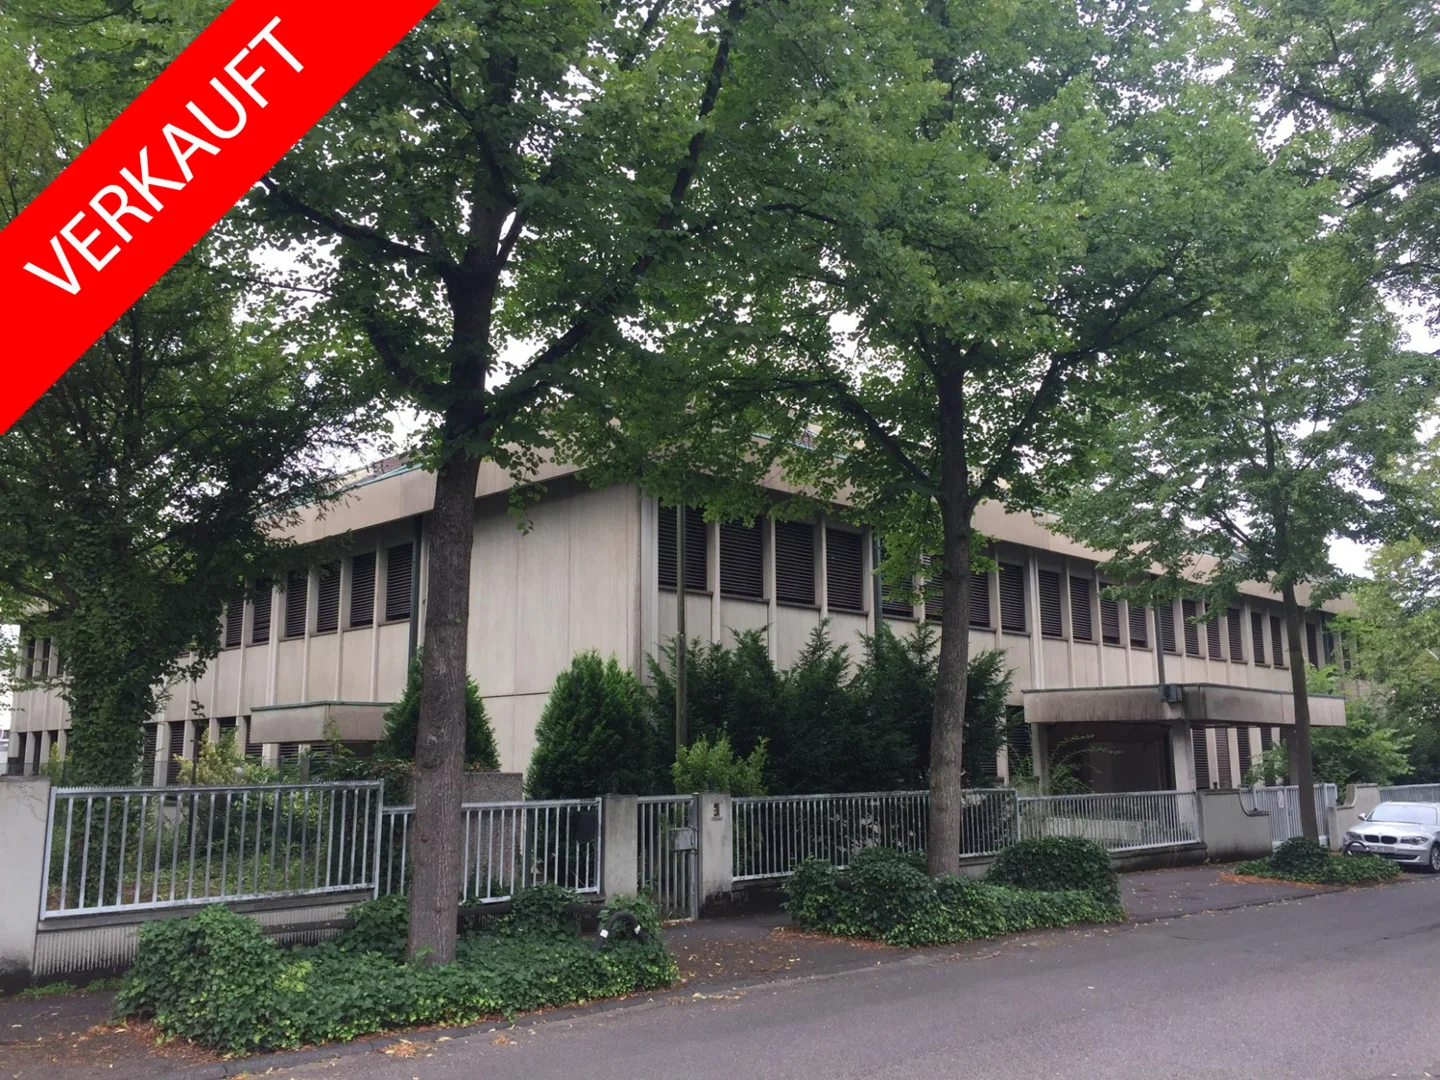 Verkauft - frühere jugoslawische Botschaftsimmobilie in Bonn Mehlem!